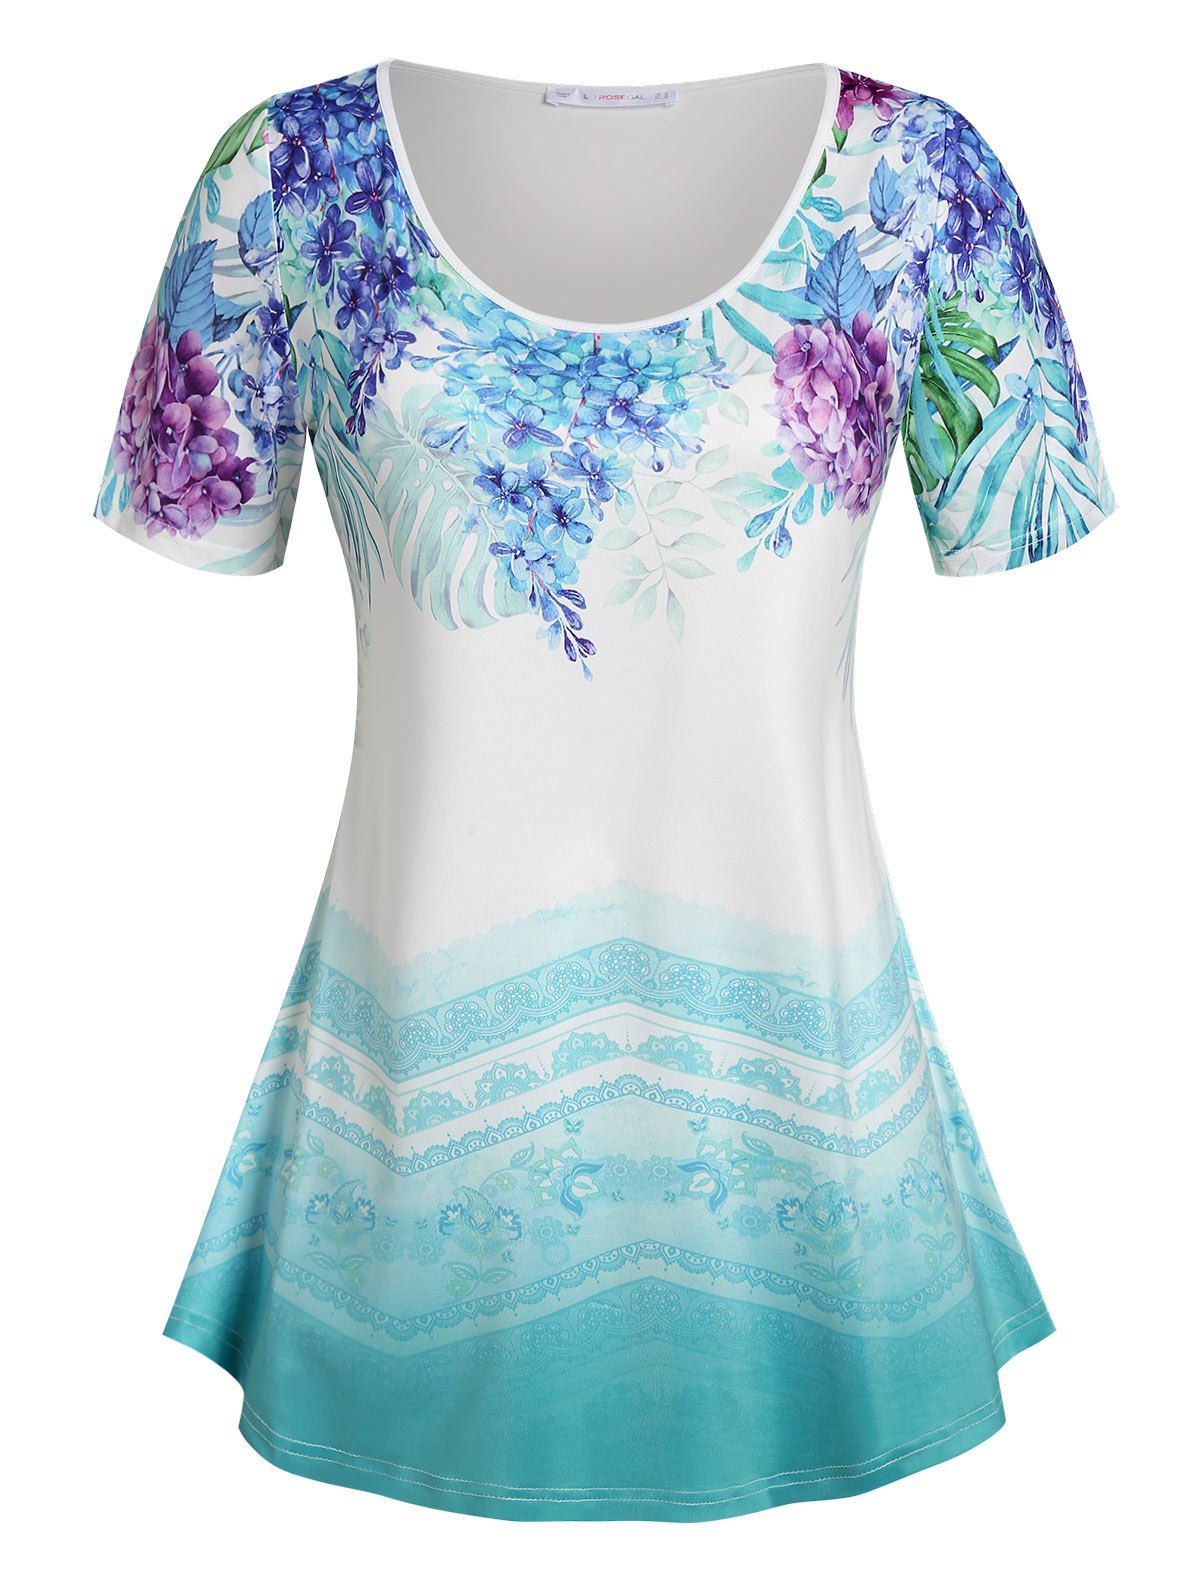 T-shirt Ombre à Imprimé Floral Grande Taille - Bleu clair 4X